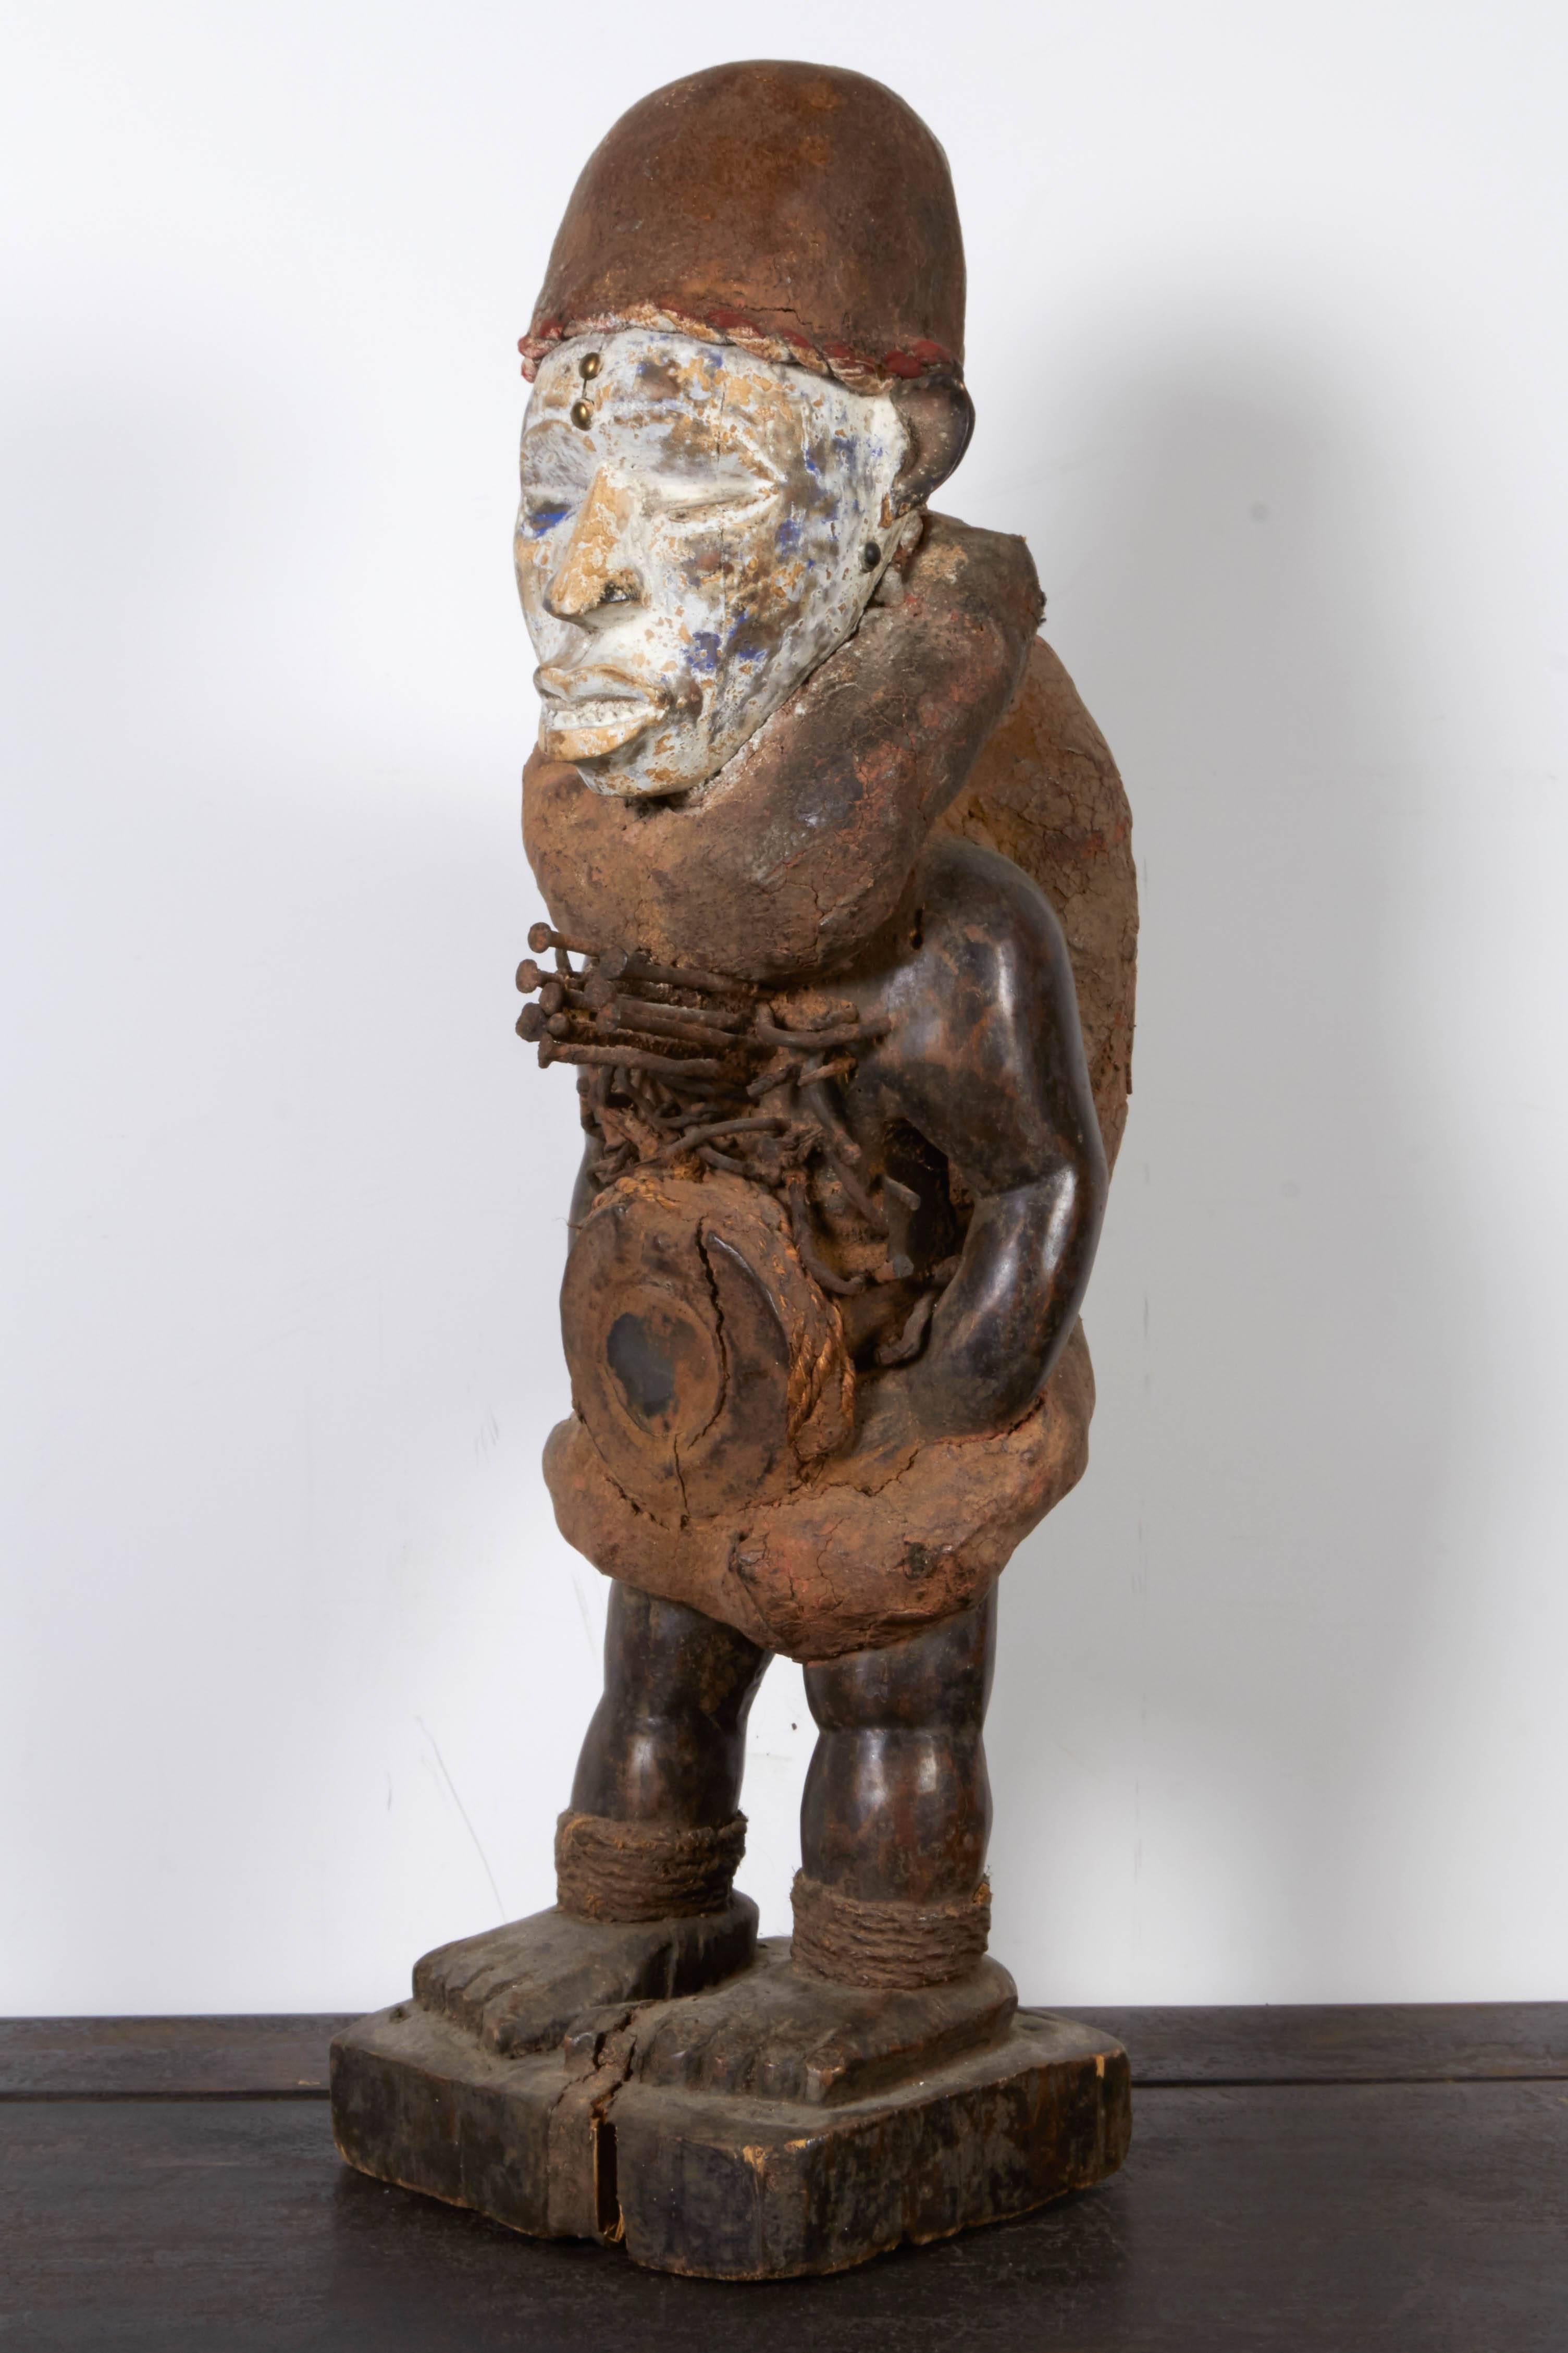 Congolese Congo Divination Figure Sculpture